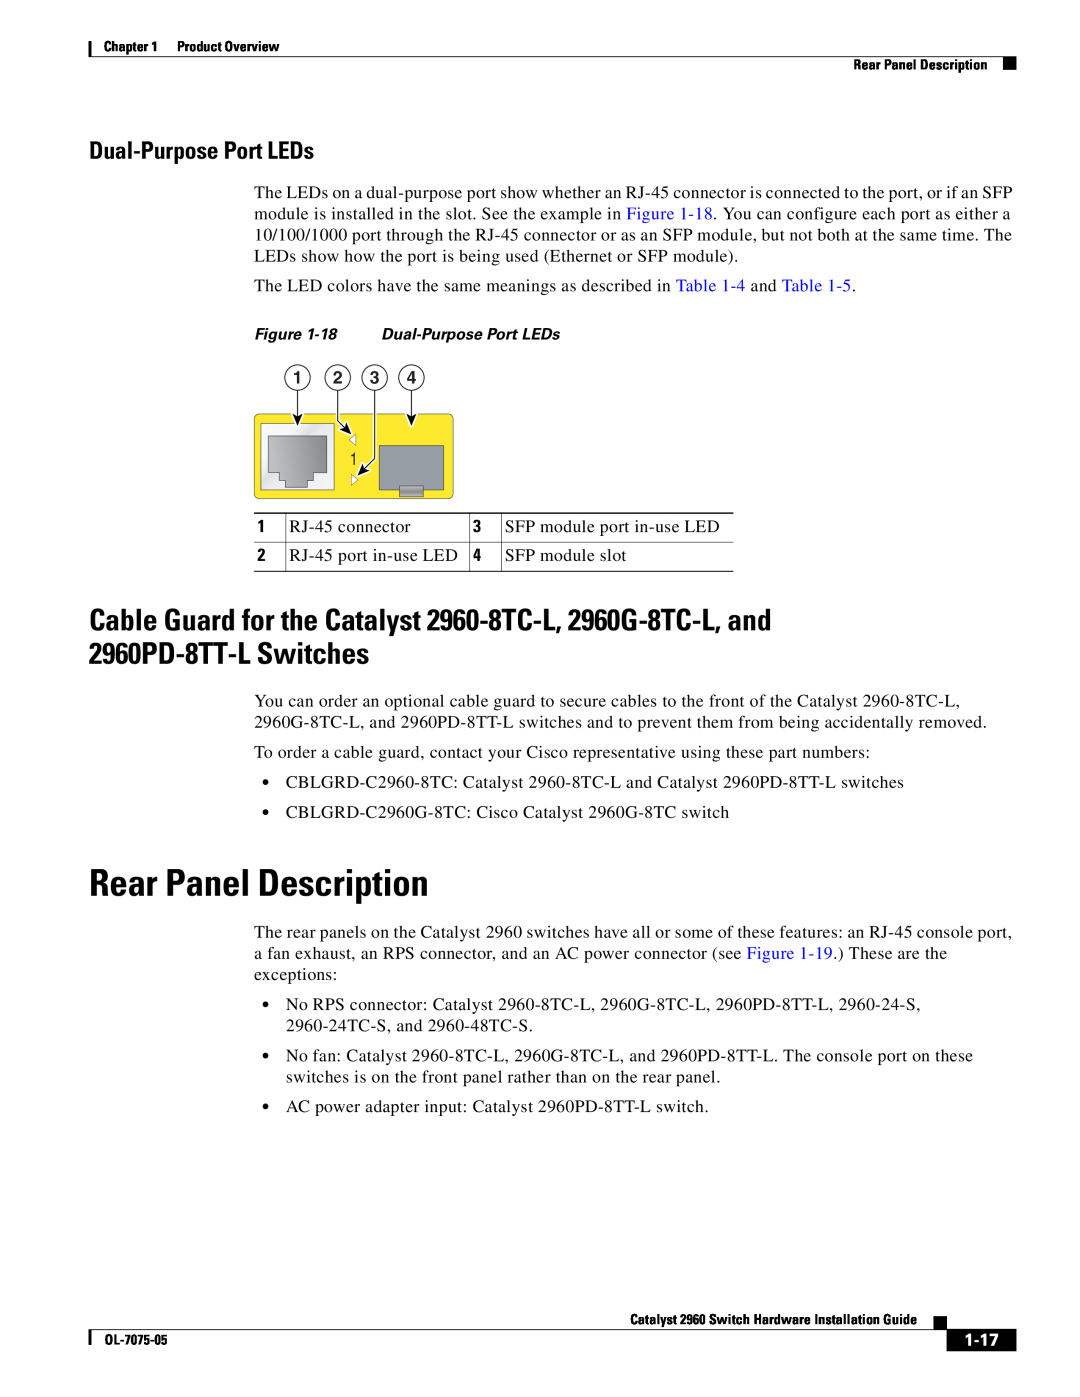 Cisco Systems 2960 specifications Rear Panel Description, Dual-Purpose Port LEDs, 1-17 